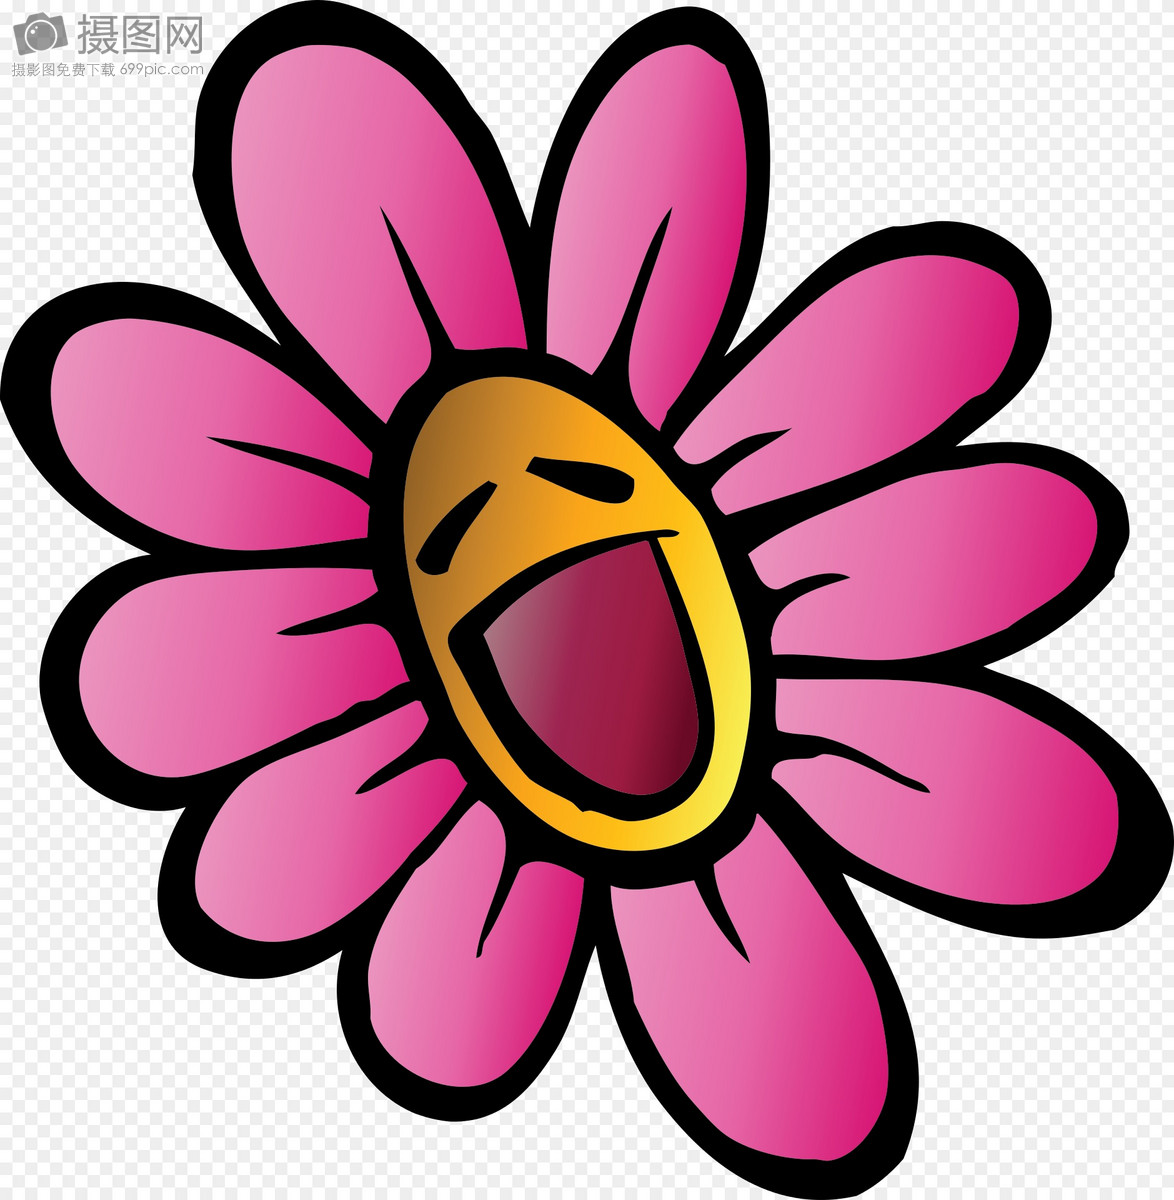 猫咪脸红送玫瑰花表情包 Is for you 送你一朵玫瑰花 送花表白表情包 这是给你的表情包图片gif动图 - 求表情网,斗图从此不求人!